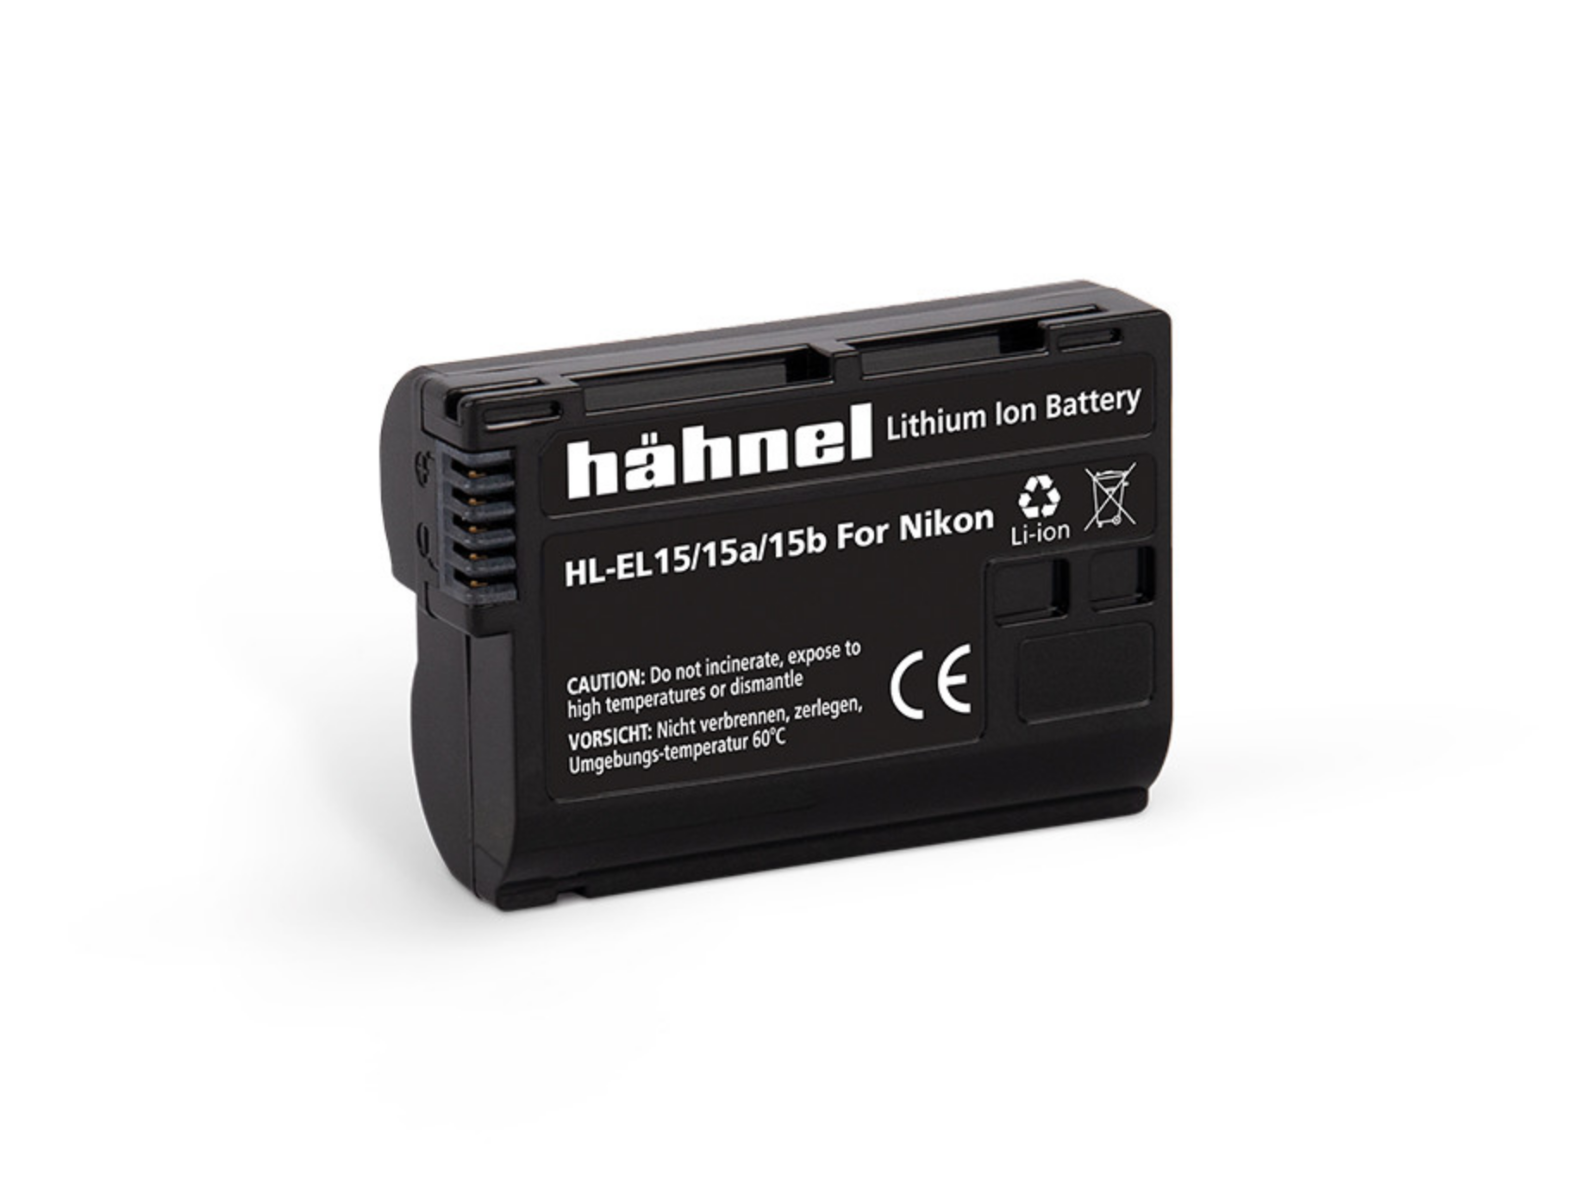 Hahnel HL-EL15 Nikon Type Li-ion Battery Replacement for D7000 / D800 / D800E - EN-EL15